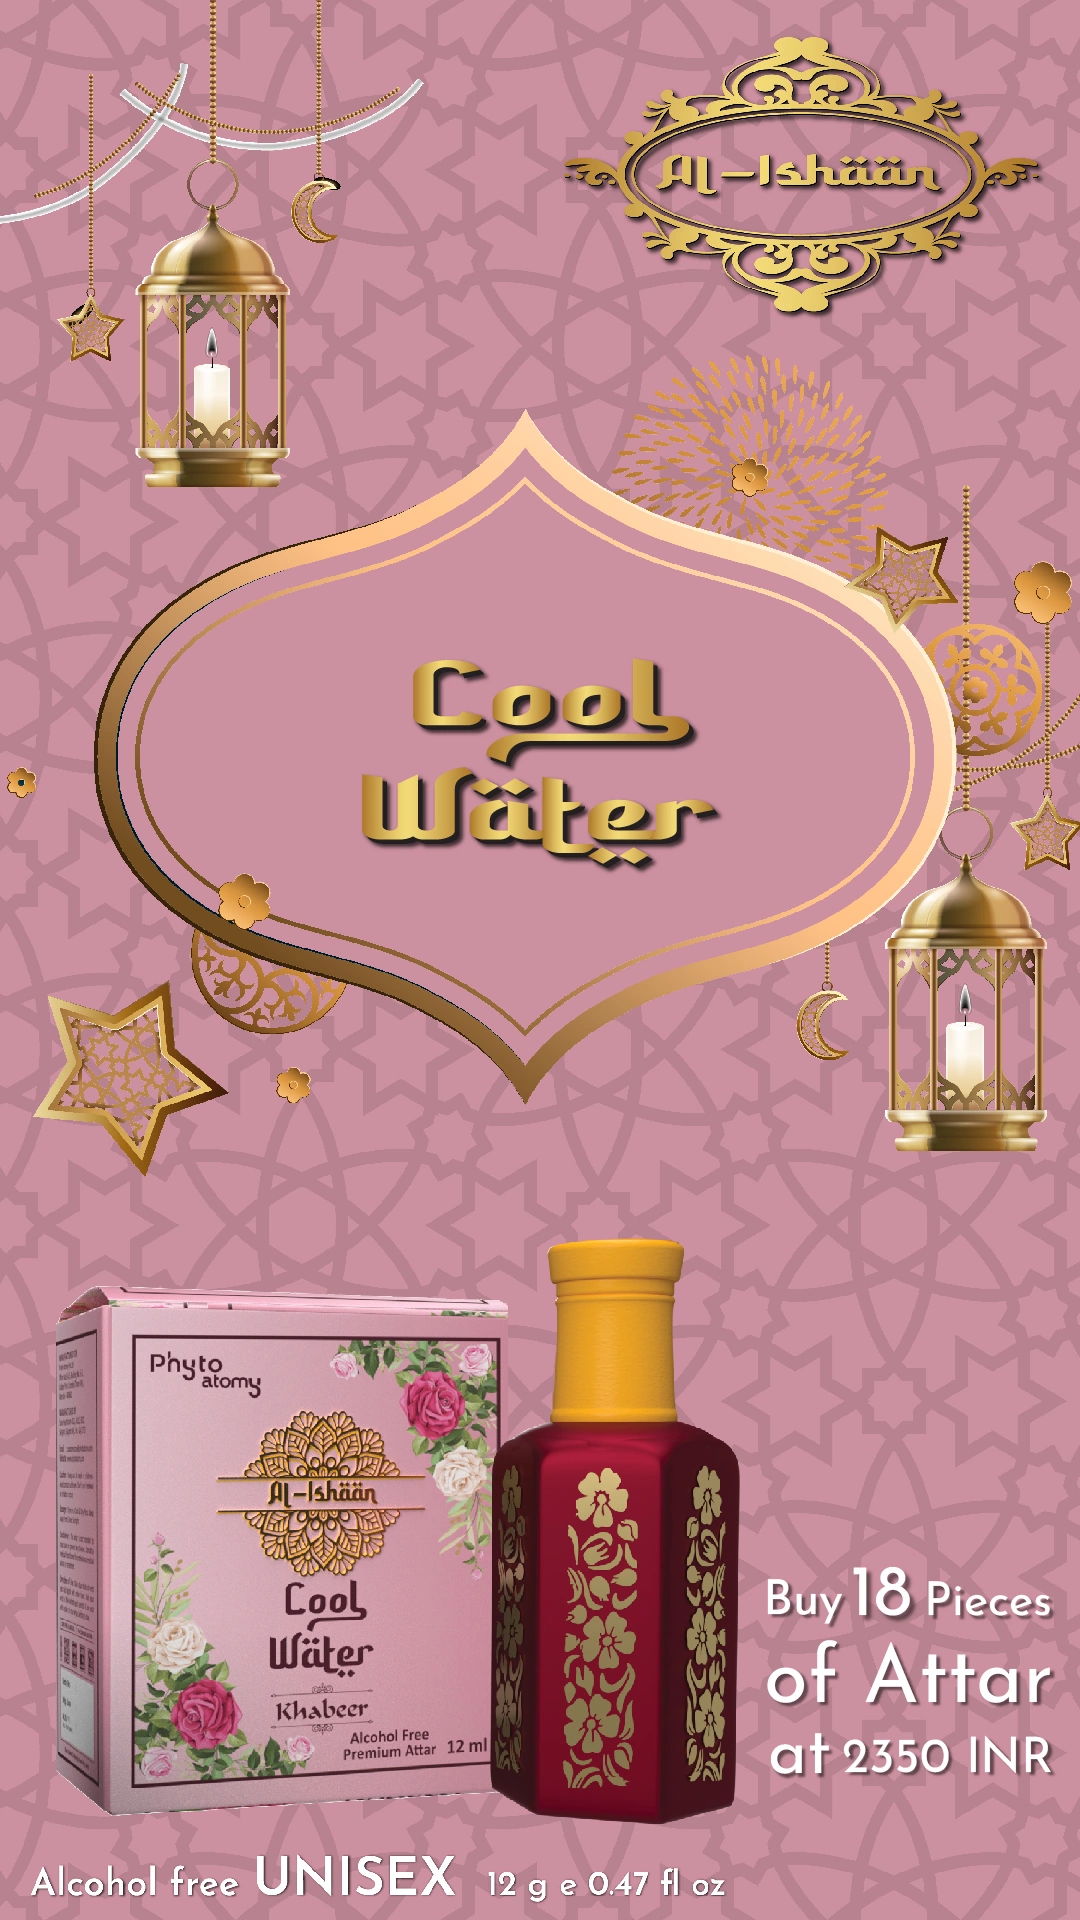 SCBV B2B Al Ishan Cool Water Attar (12ml)-18 Pcs.